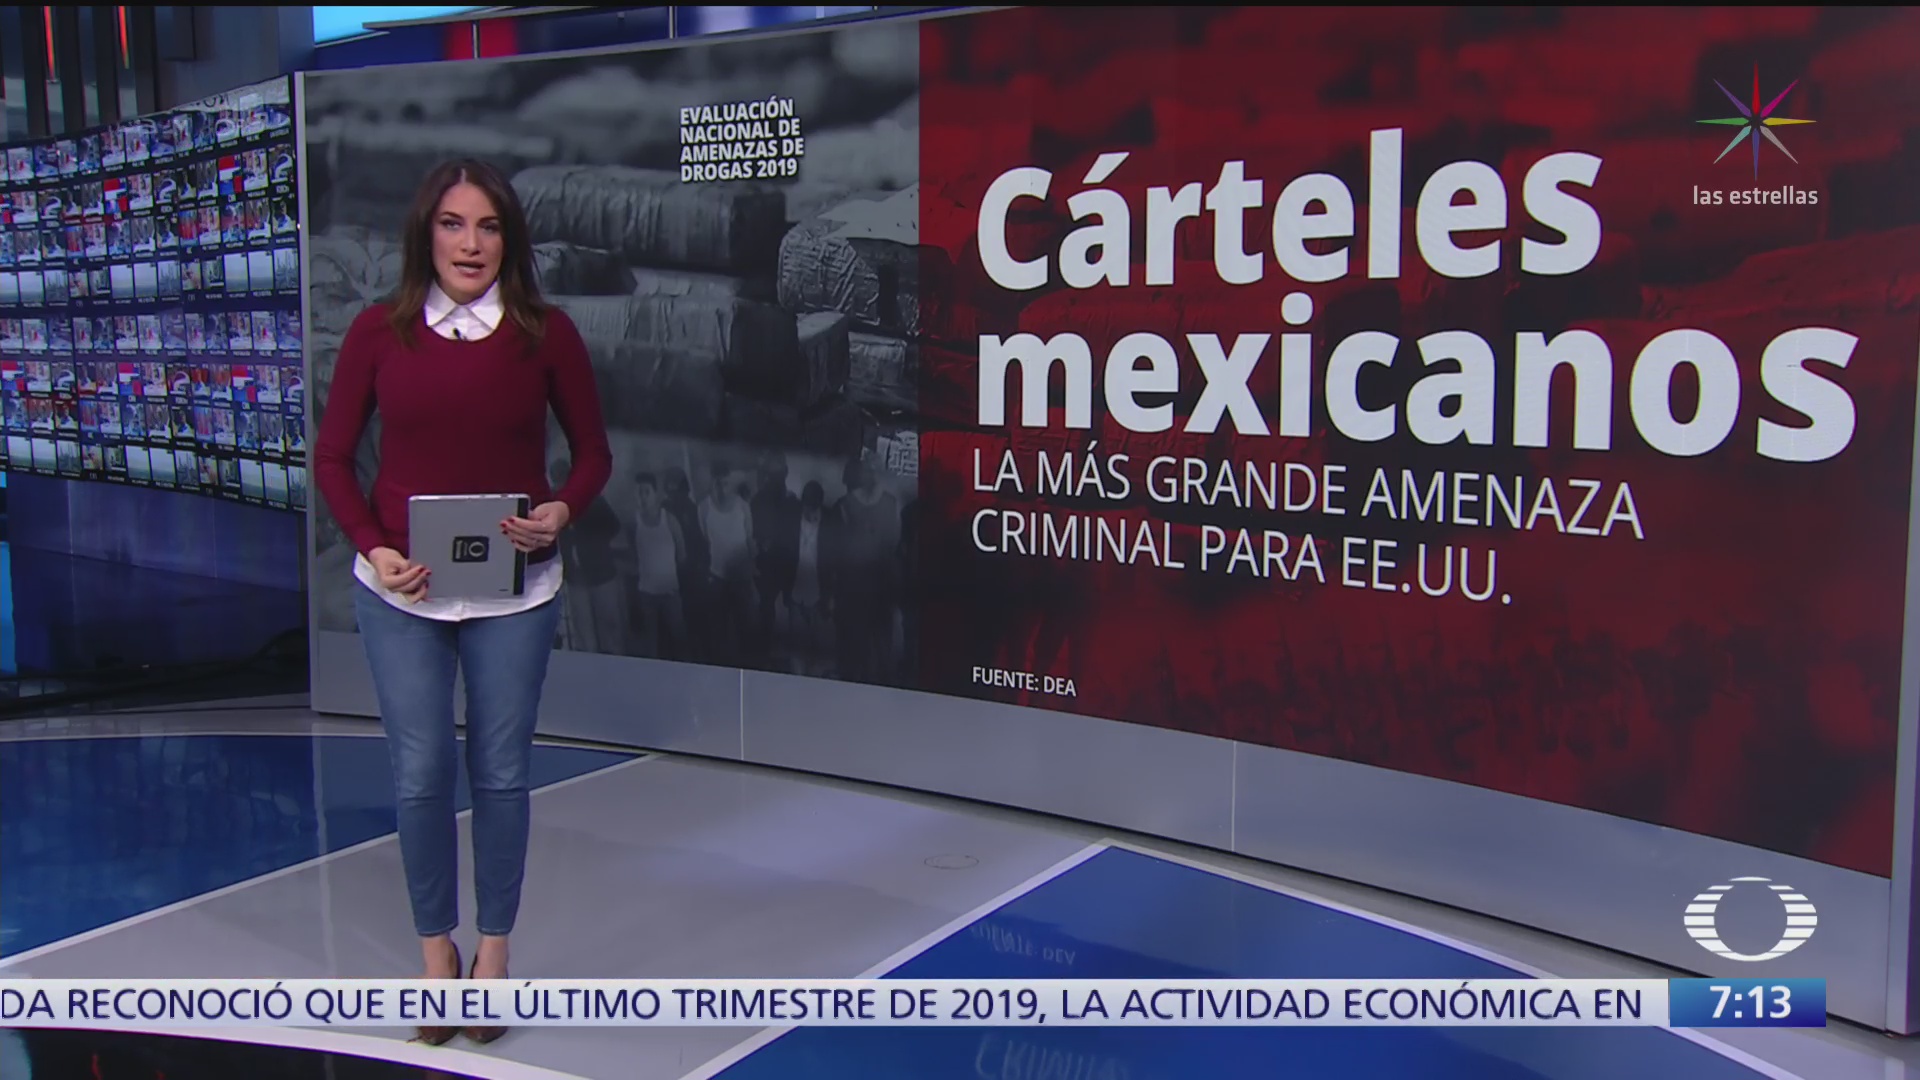 carteles mexicanos mayor amenaza criminal del narco para estados unidos